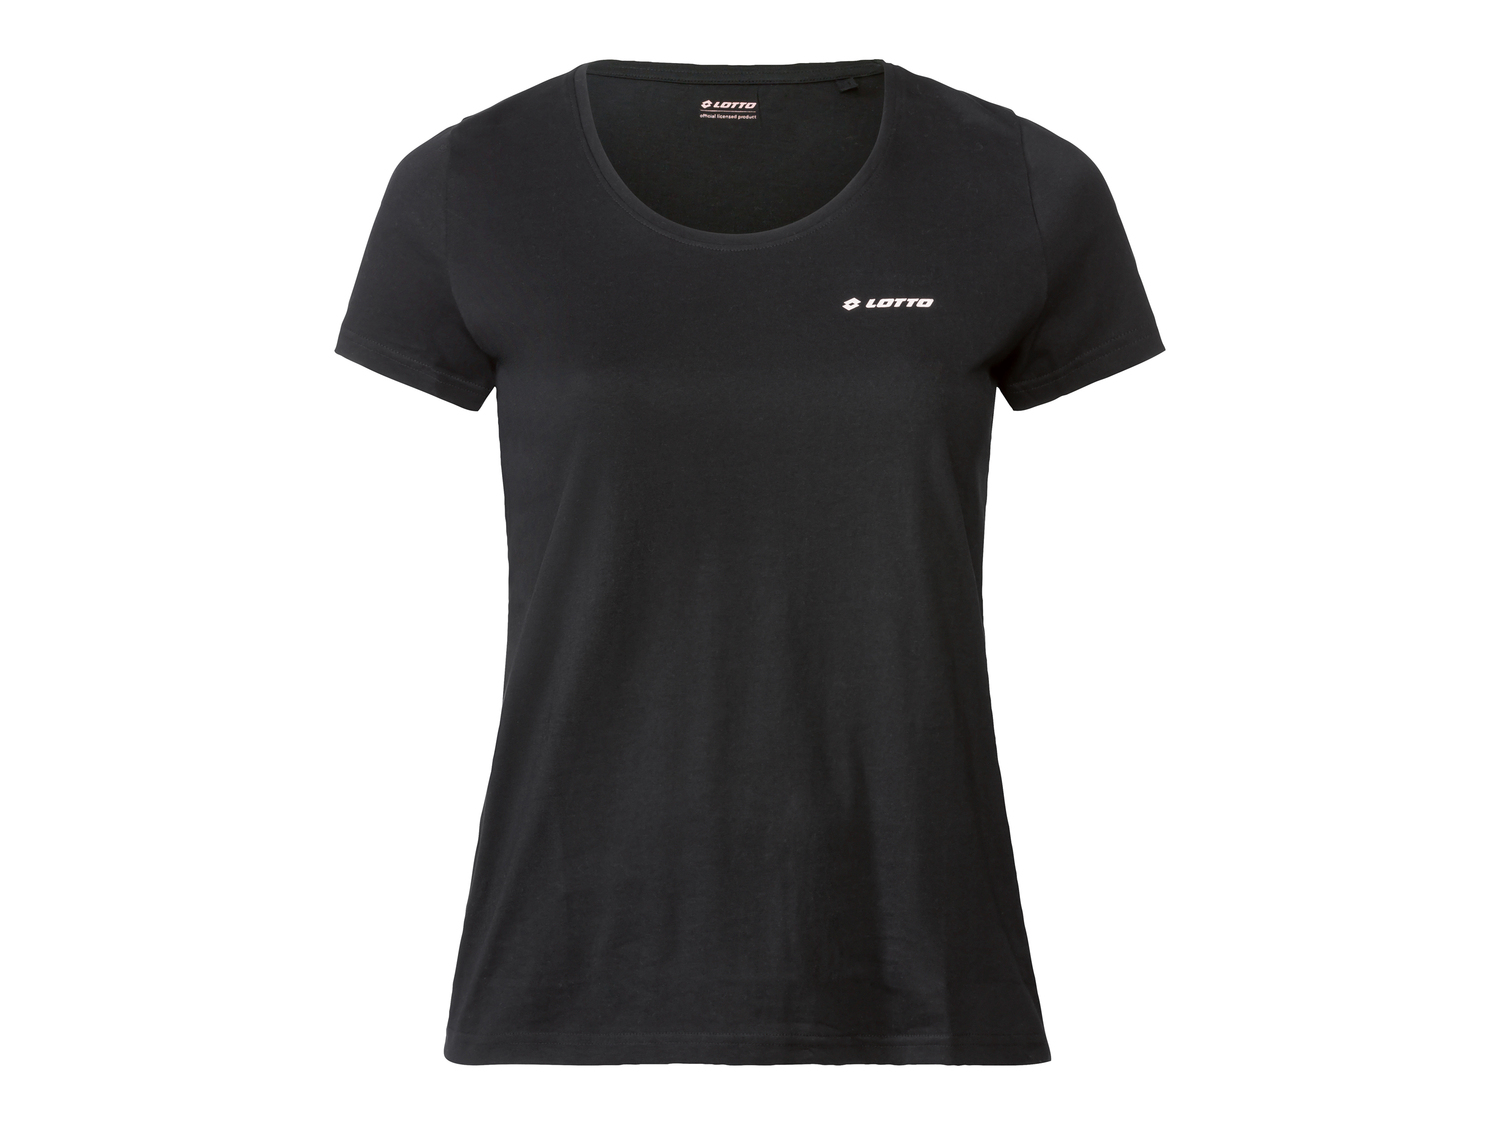 T-shirt da donna Lotto, prezzo 9.99 &#8364; 
Misure: S-L
Taglie disponibili

Caratteristiche

- ...